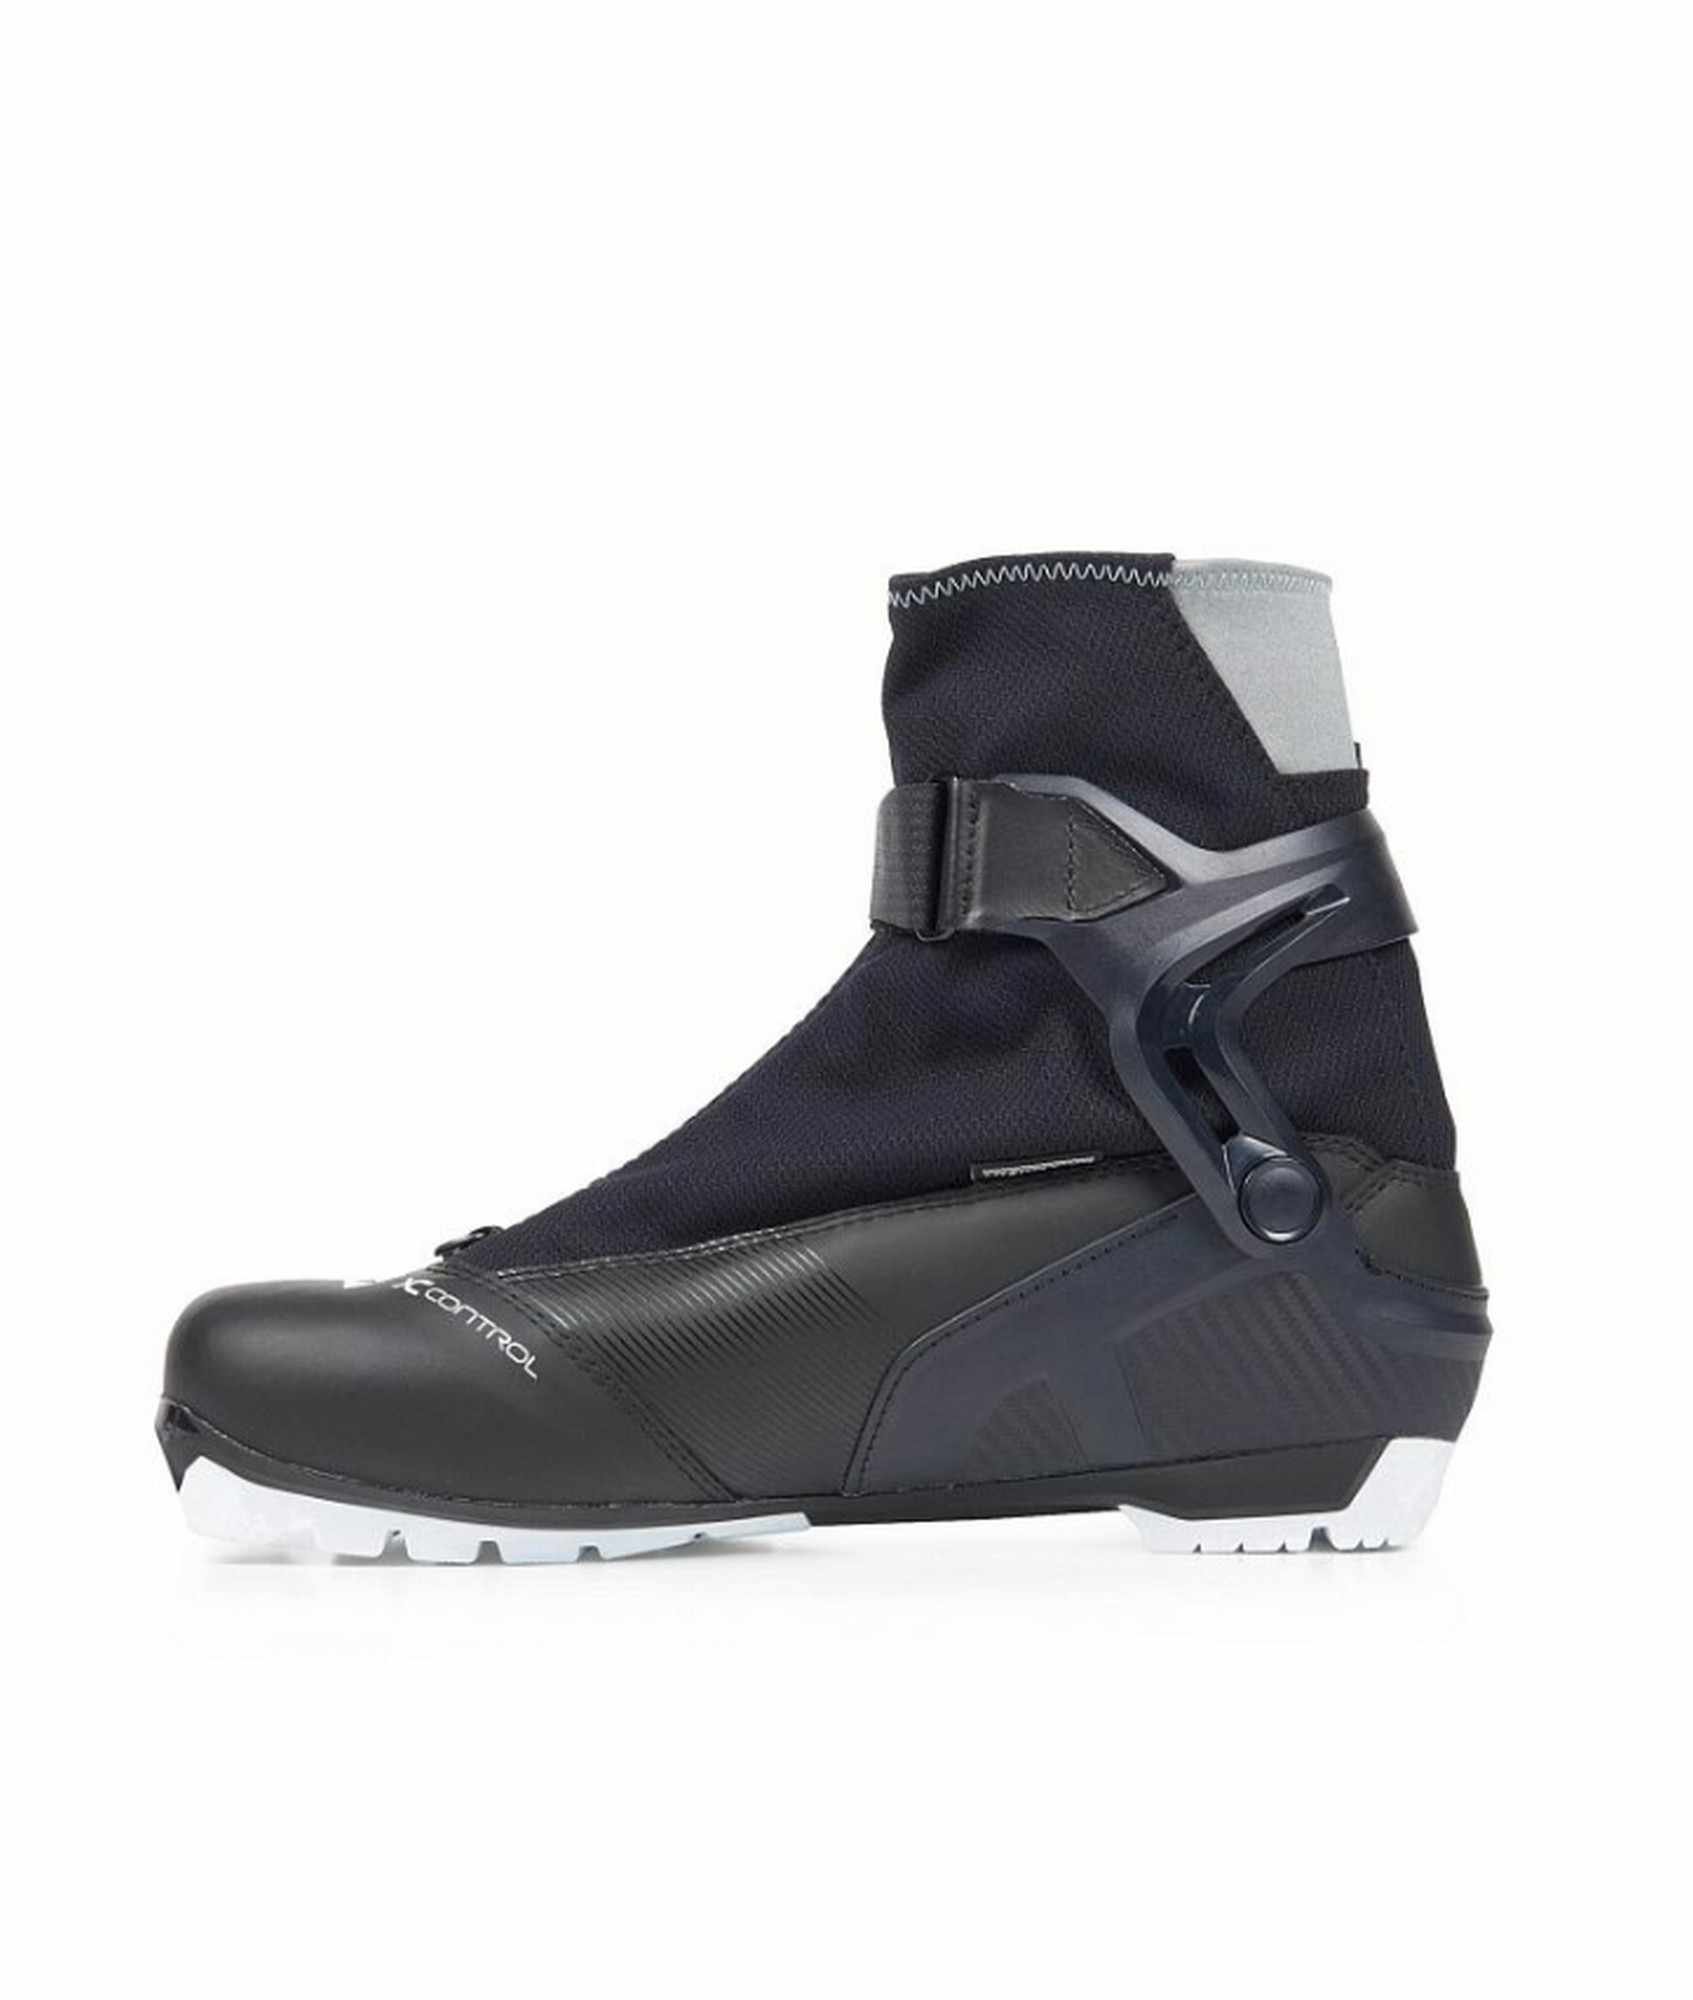 Лыжные ботинки Fischer NNN XC Control S20519 черный 1693_2000